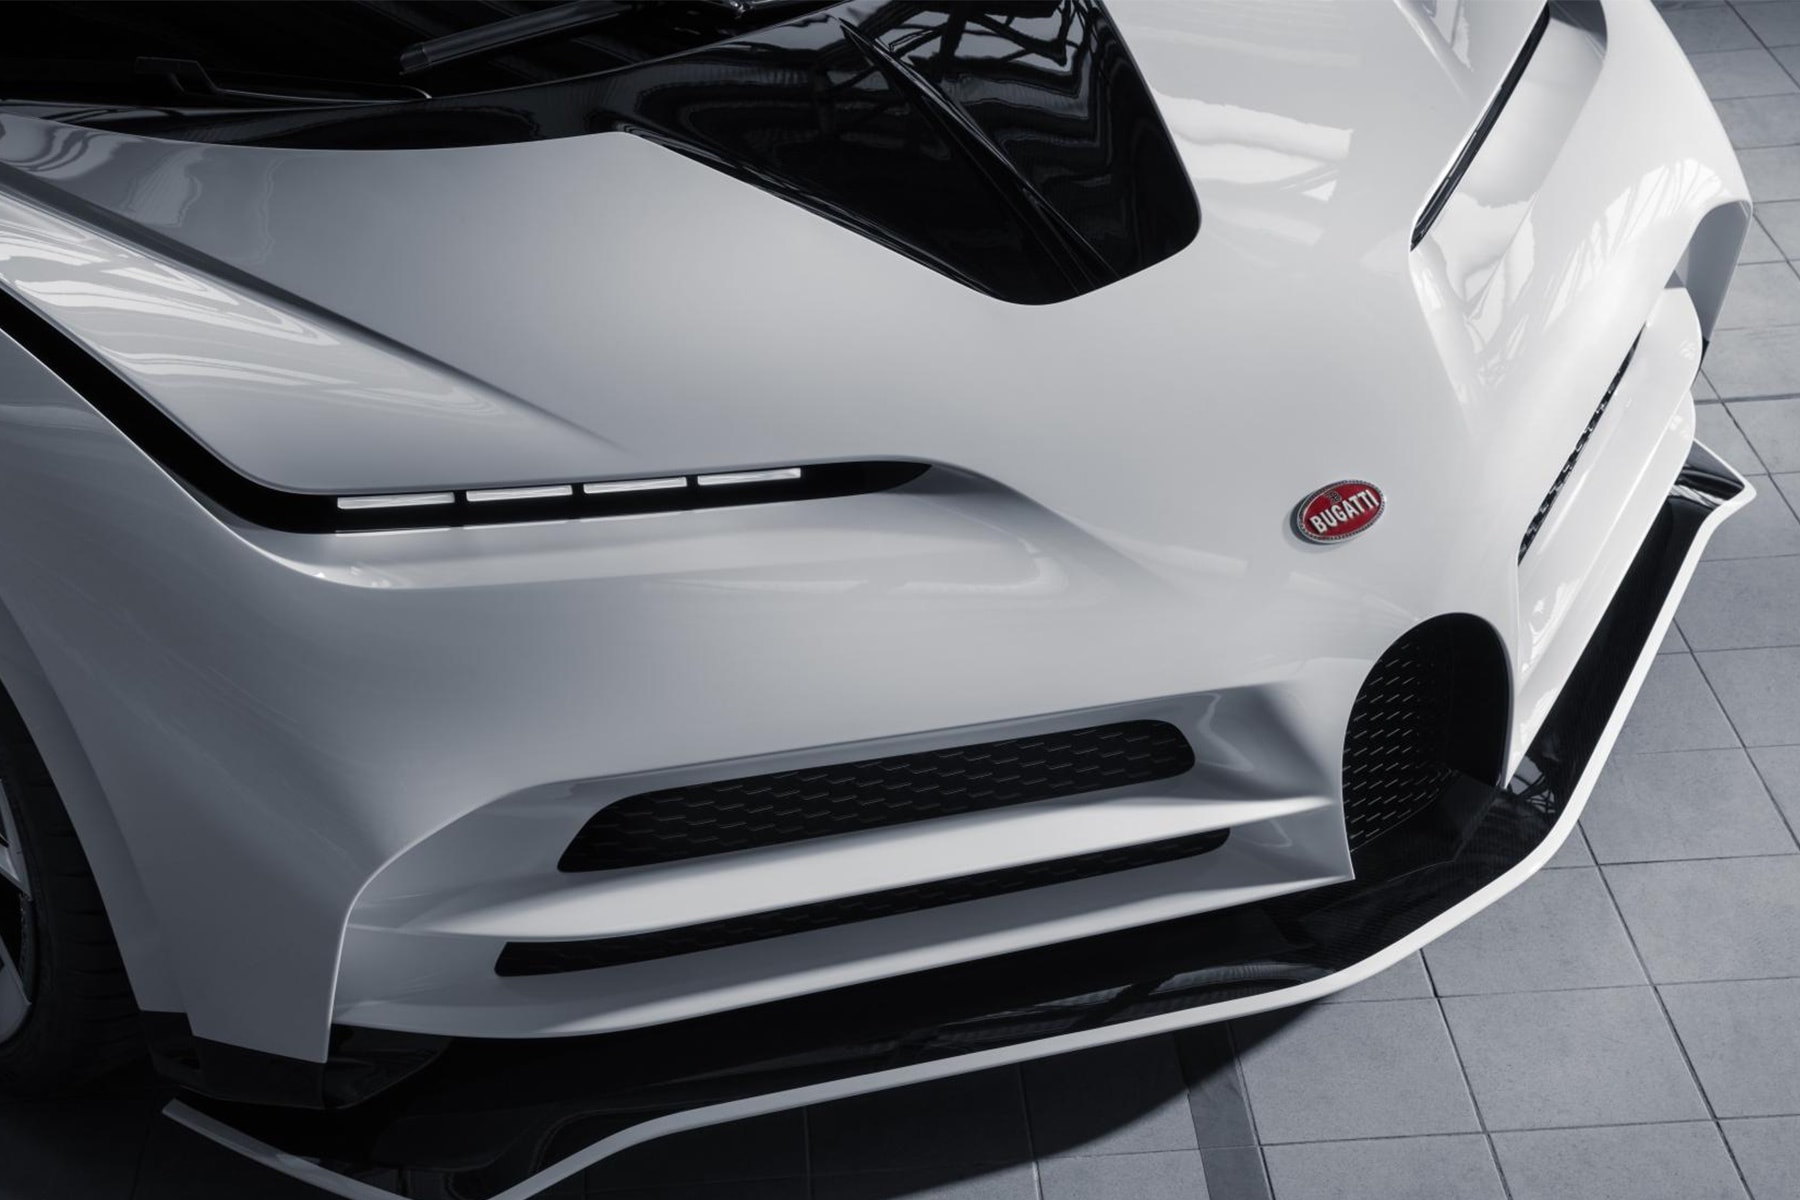 要價 $900 萬美元 Bugatti 極限量超跑 Centodieci 原型車曝光